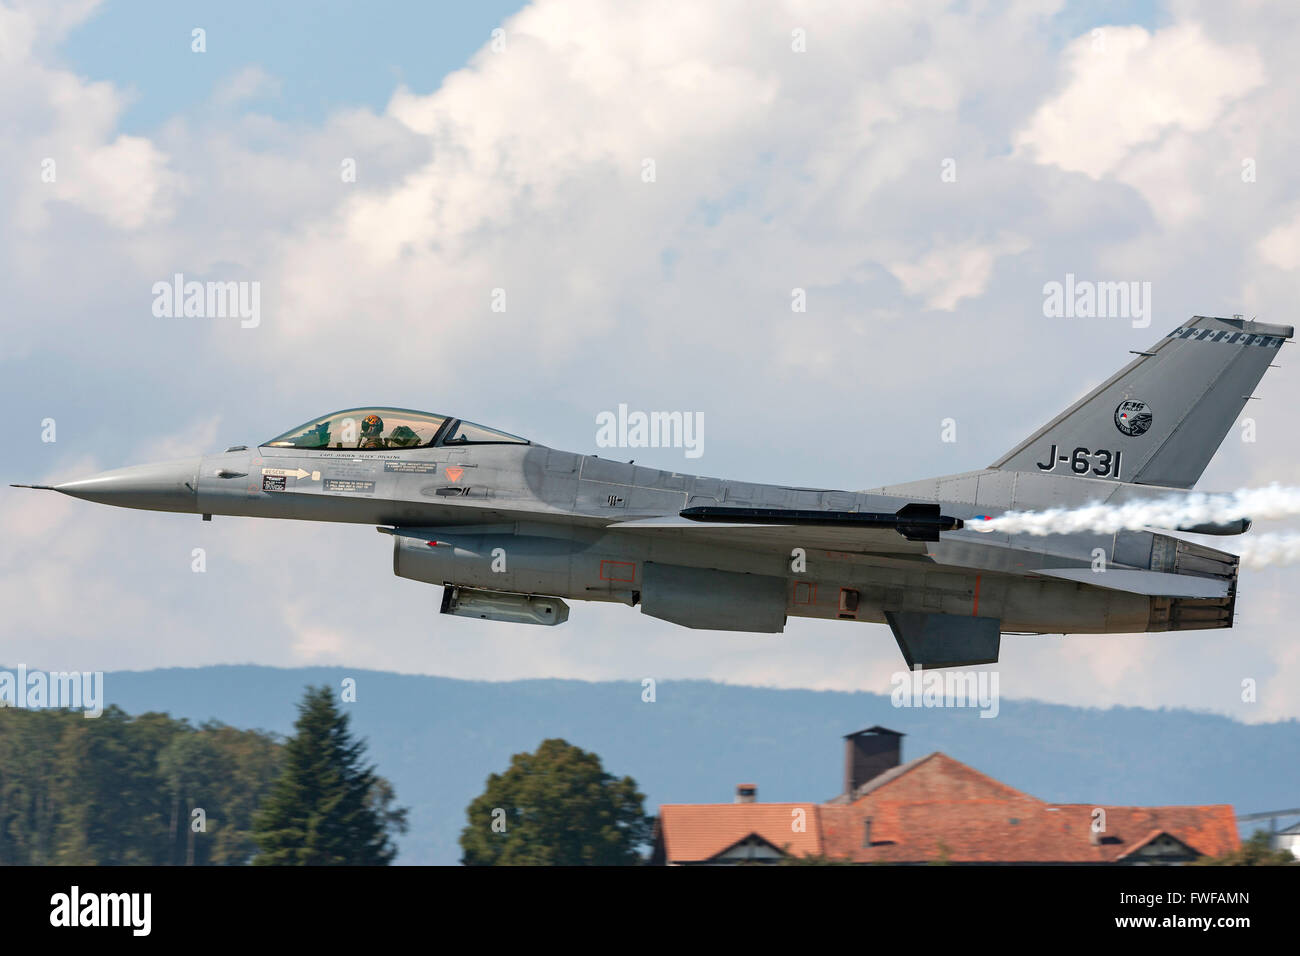 Königlichen niederländischen Air Force General Dynamics F-16 Fighting Falcon (Viper) Jagdflugzeug aus dem f-16 Demo Team. Stockfoto